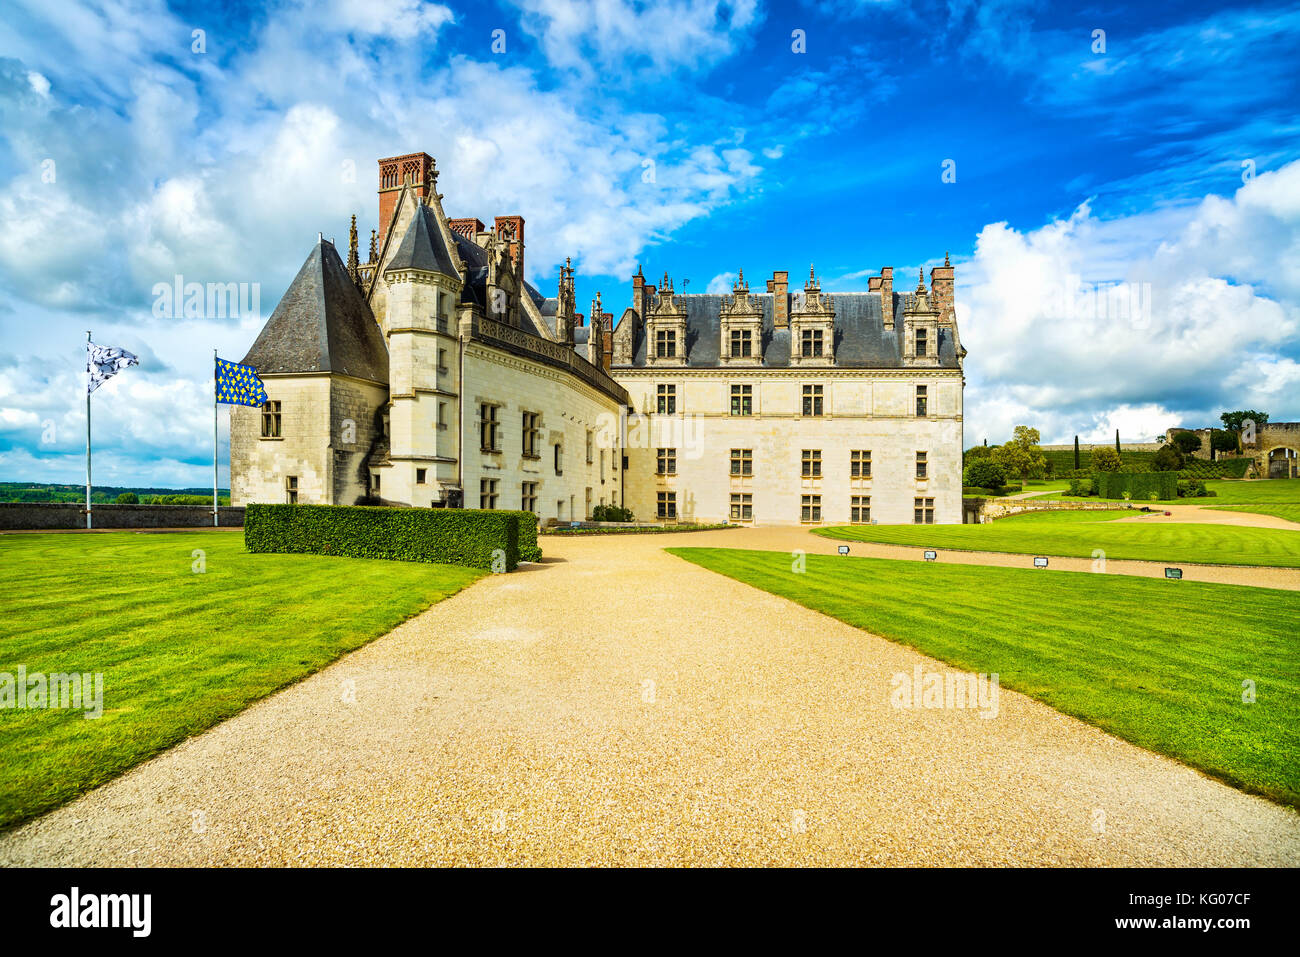 Chateau de amboise castello medievale, leonardo da vinci tomba. nella Valle della Loira, in Francia, in Europa. sito UNESCO. Foto Stock